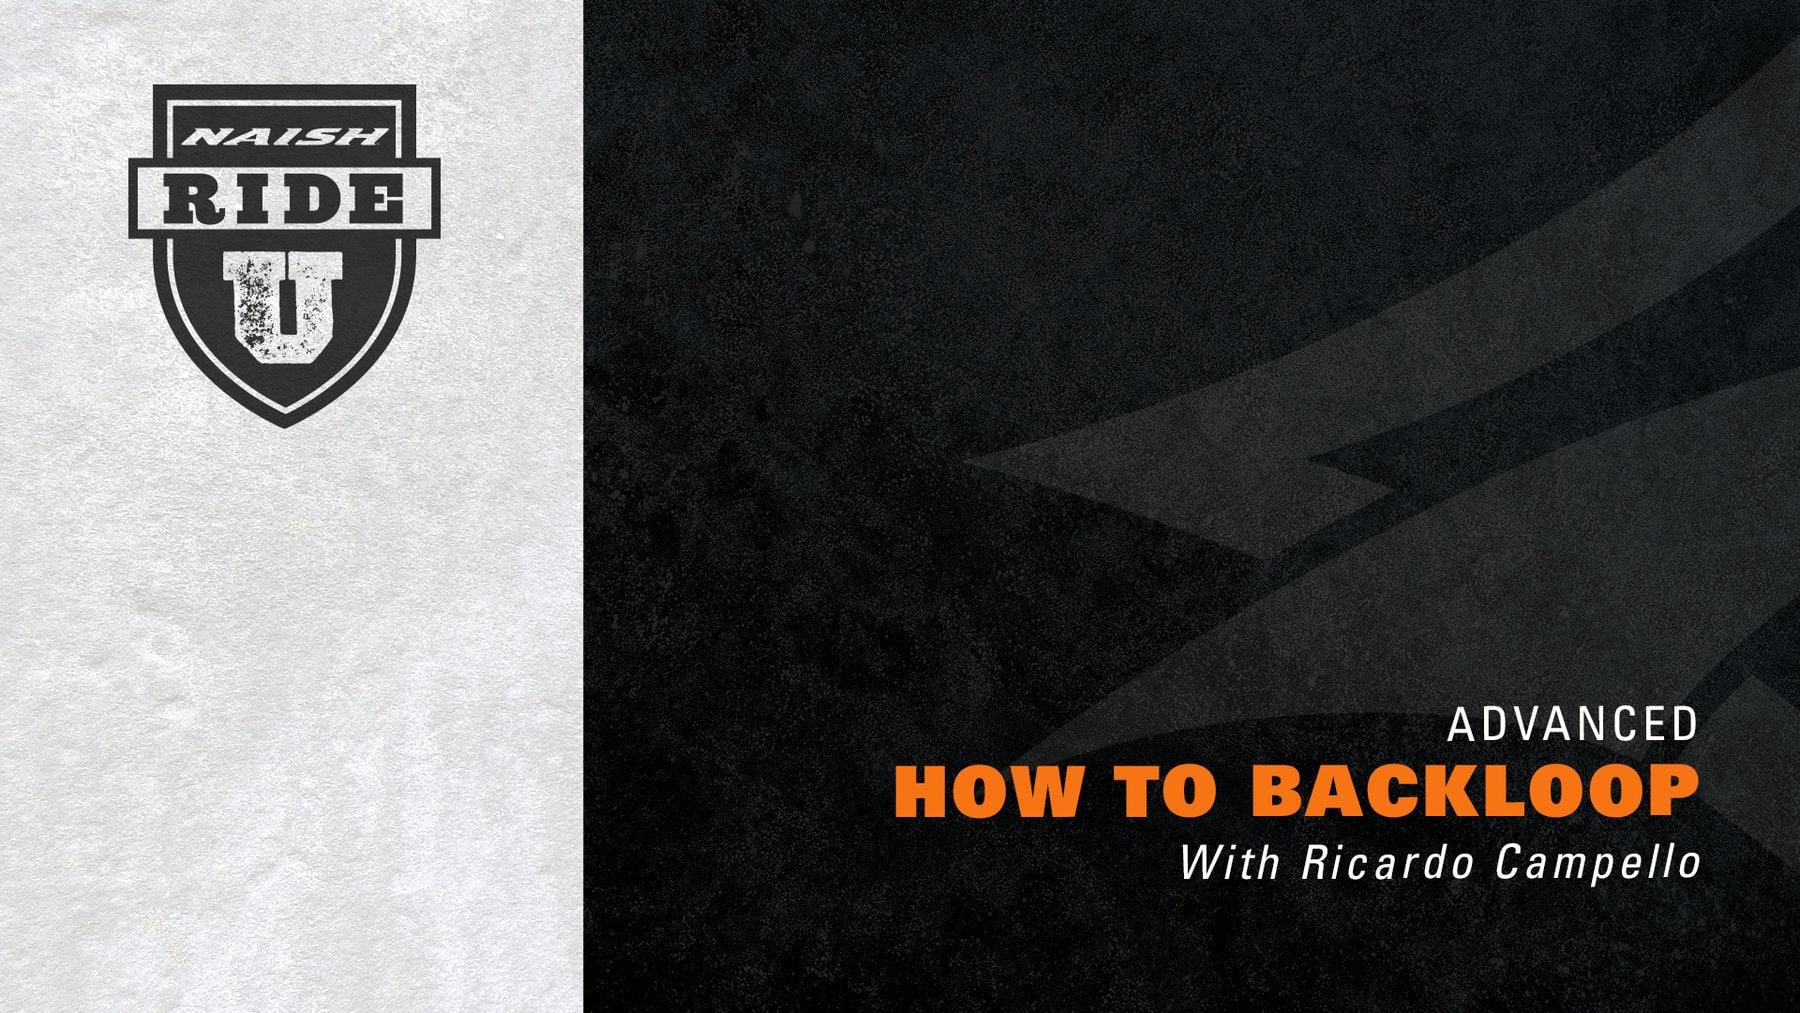 Naish Ride University: How to Backloop with Ricardo Campello - Naish.com